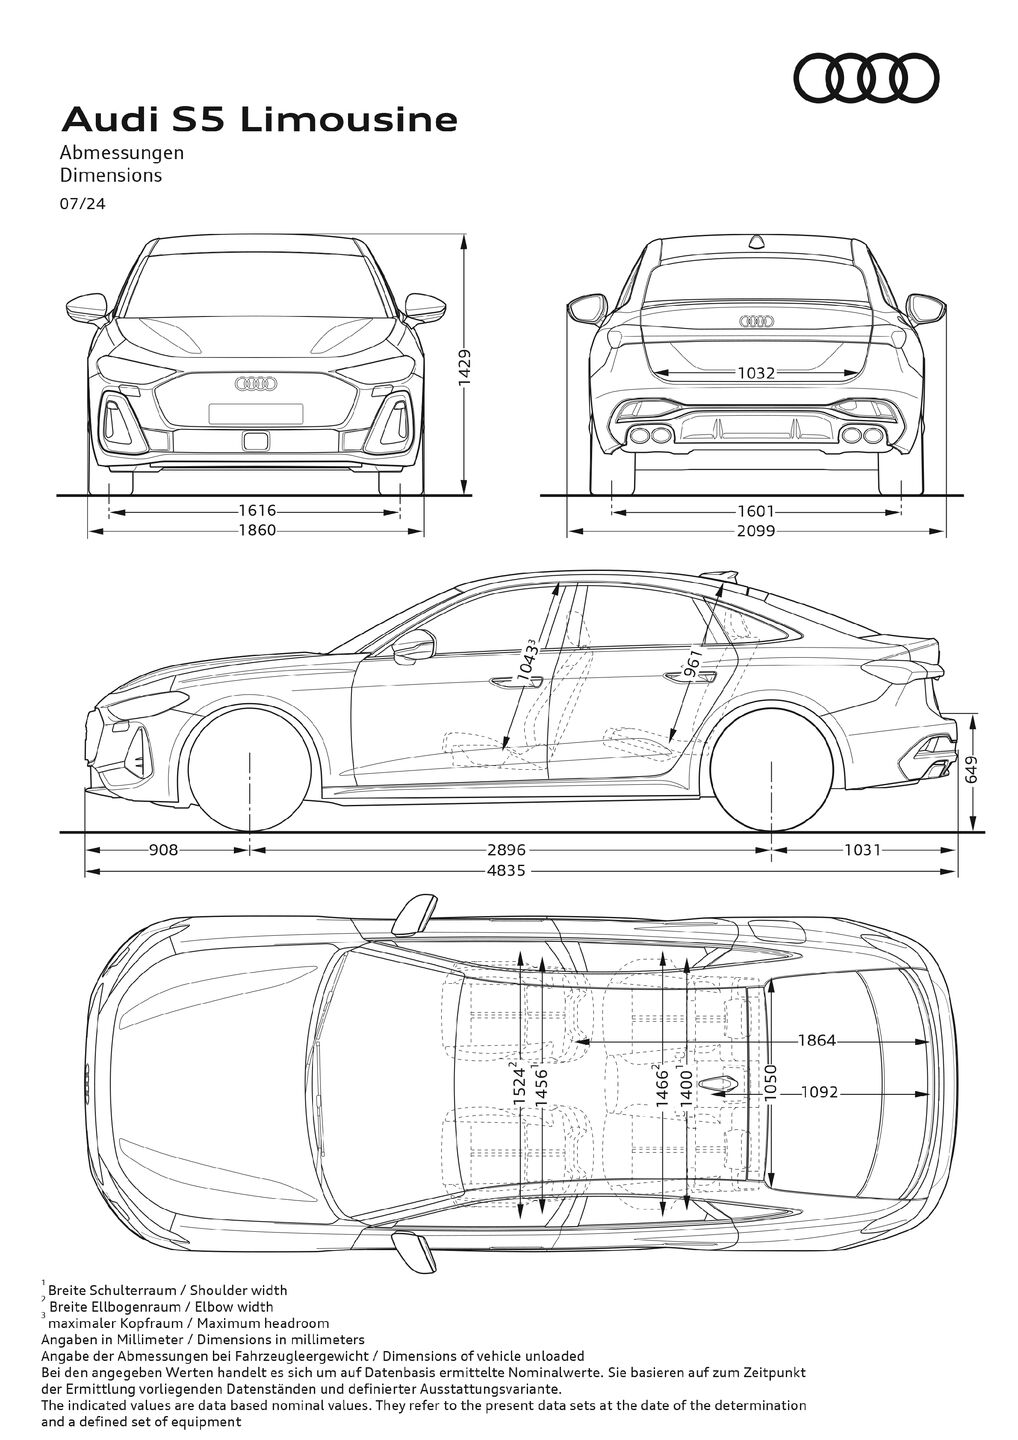 Dimensions Audi S5 Sedan